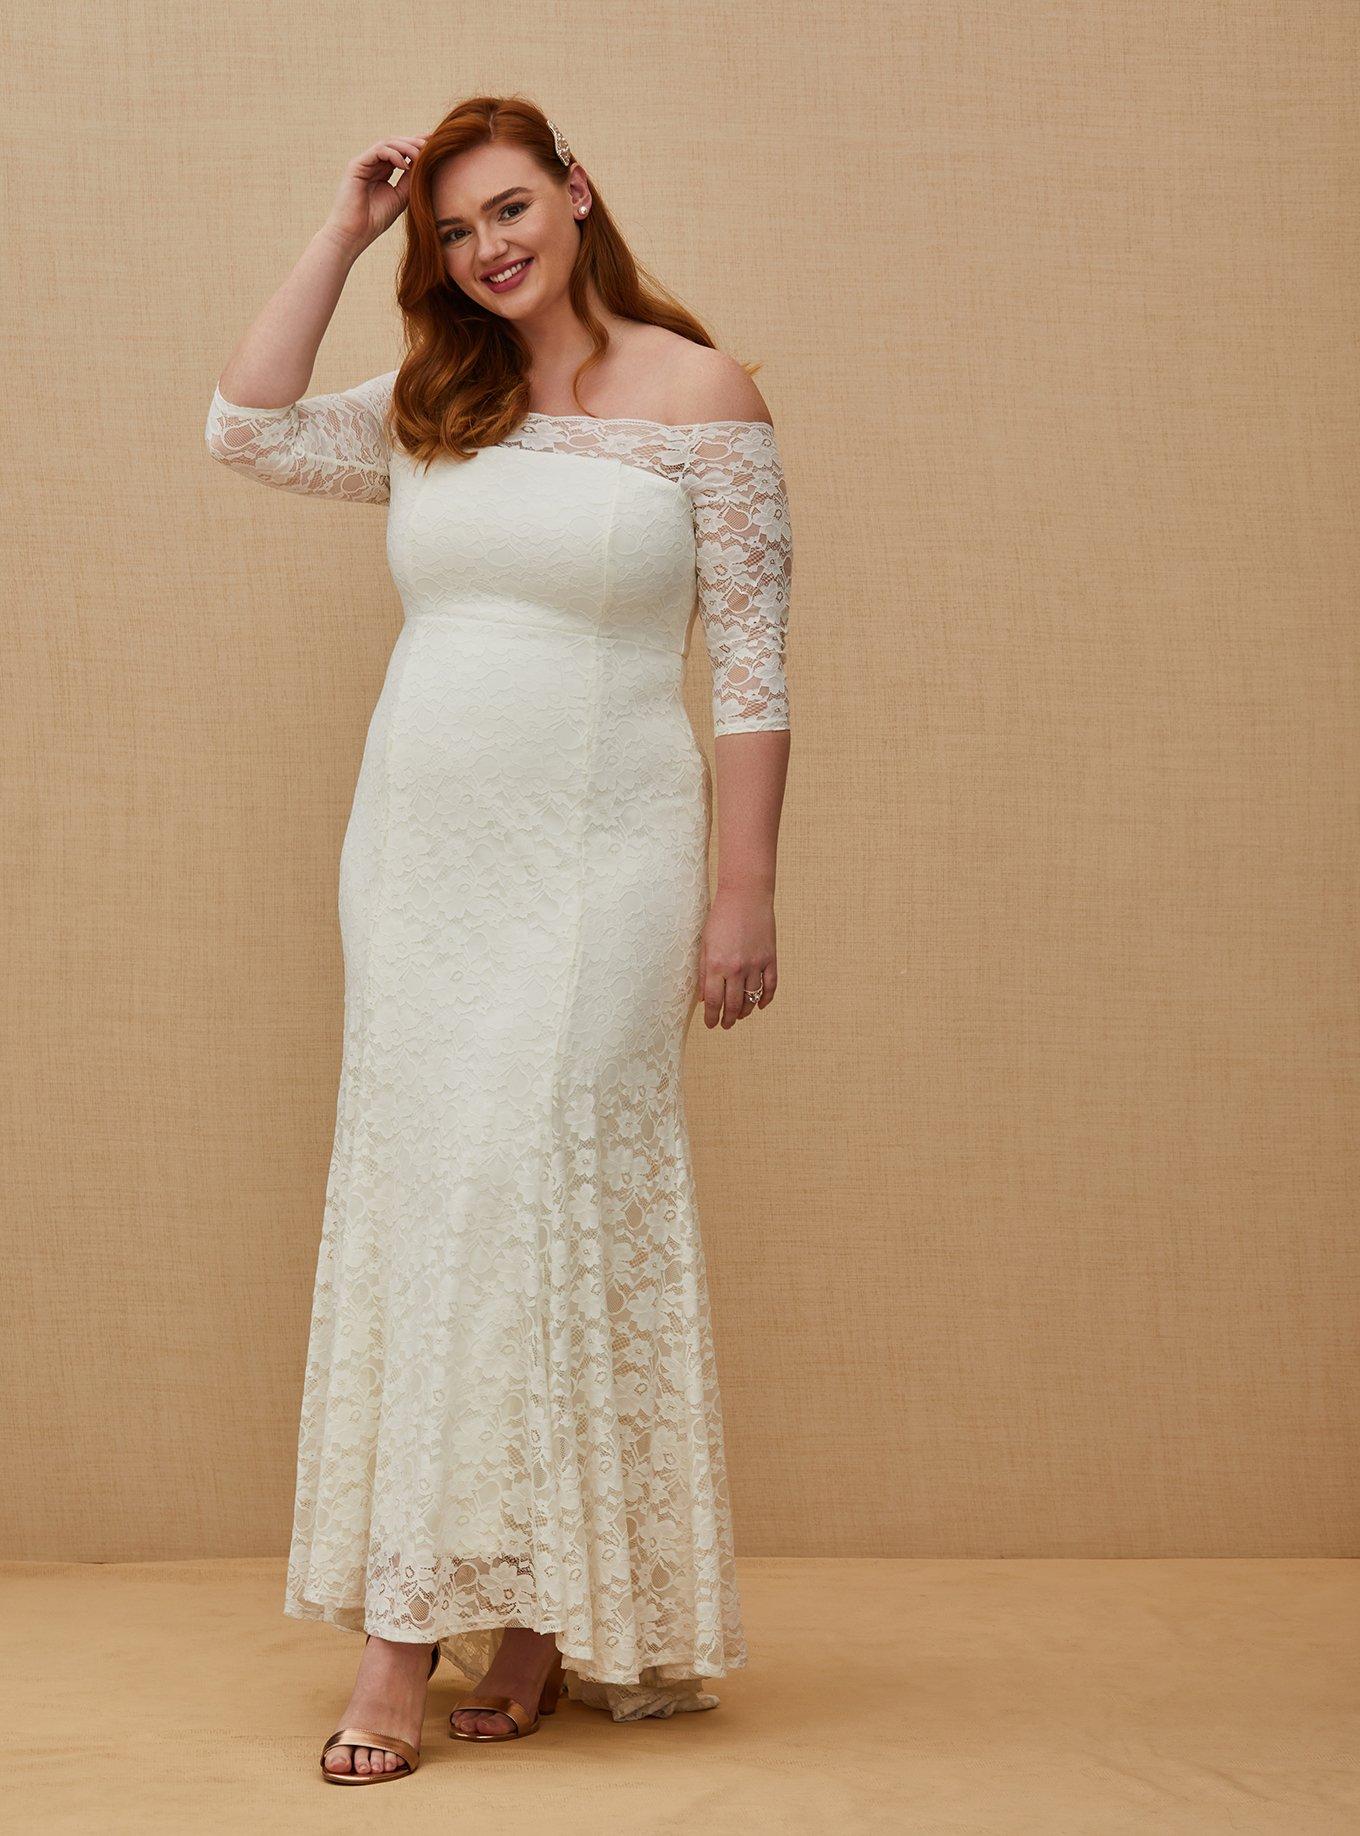 Ivory Lace Off Shoulder Fit & Flare Wedding Dress